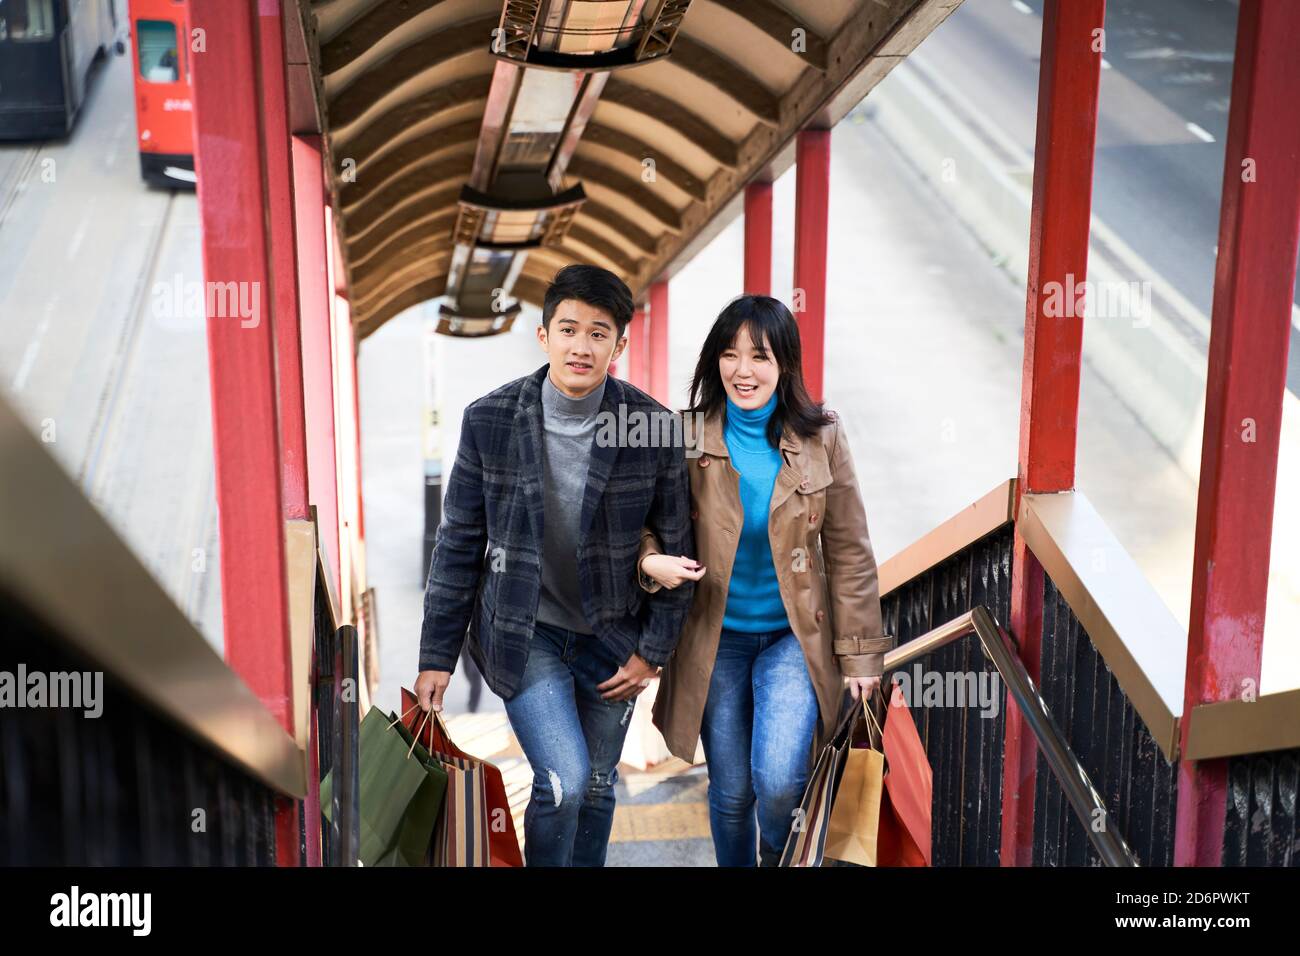 Junges asiatisches Paar, das Einkaufstüten hält, die eine Fußgängerüberführung aufsteigen Stockfoto